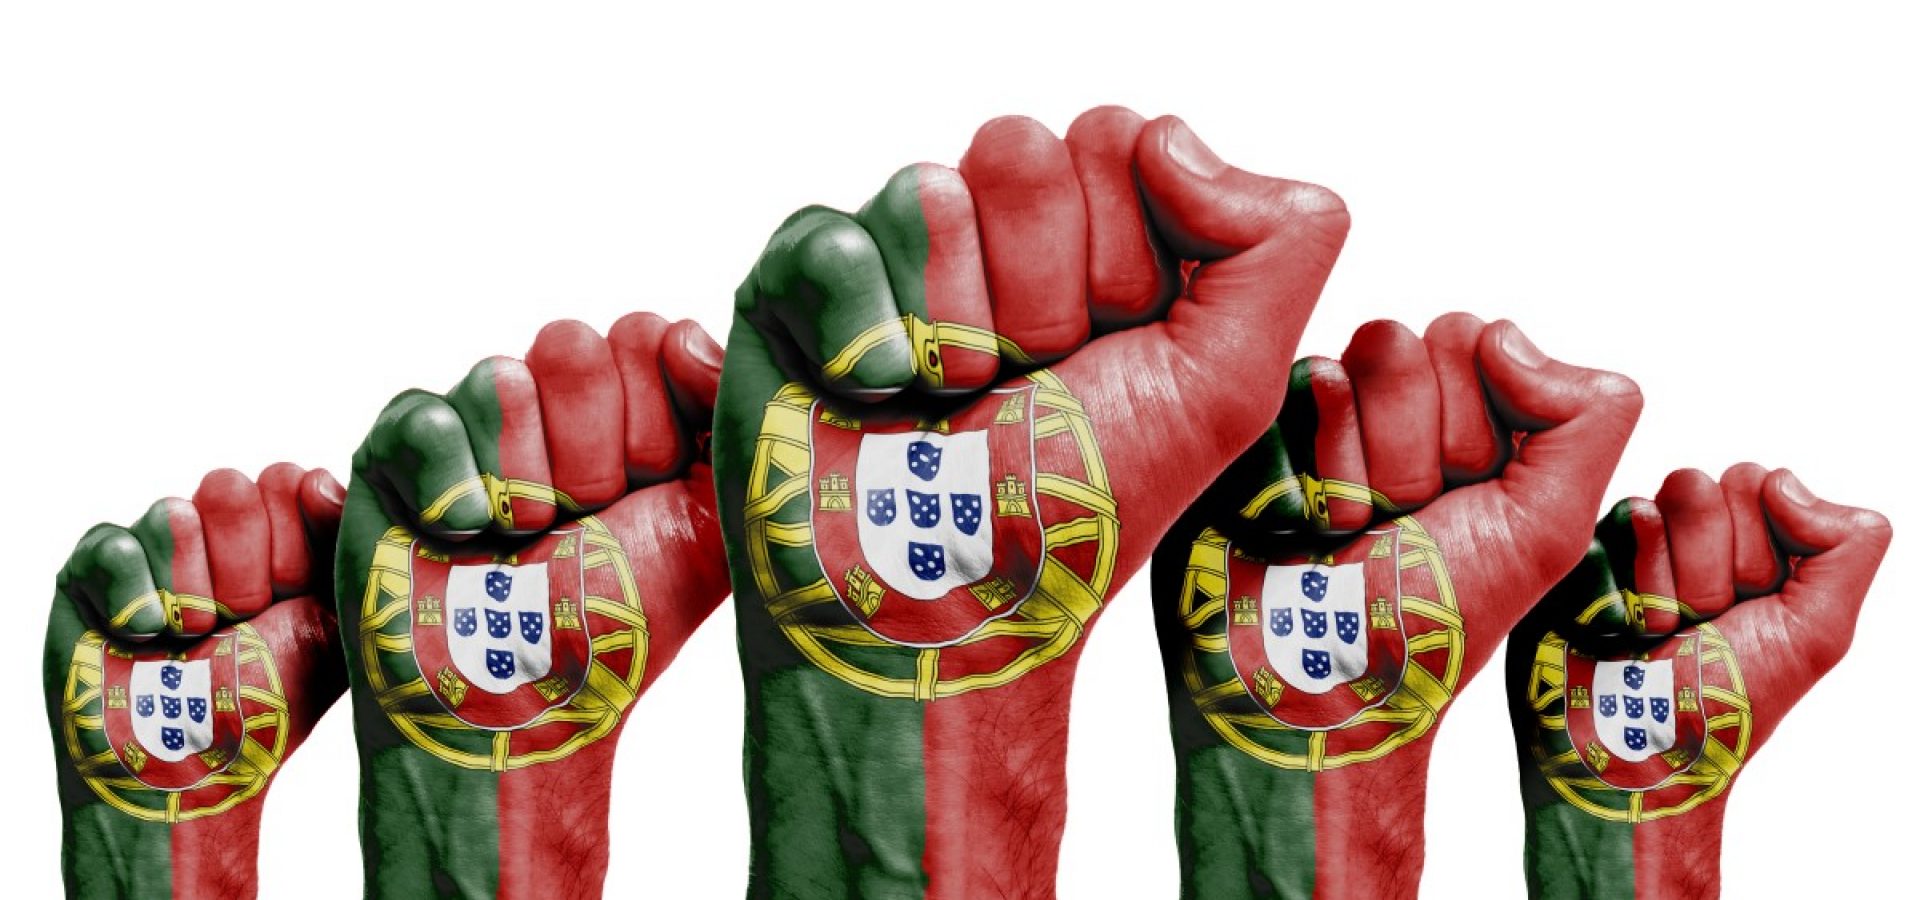 Portuguese Communities Protest Against Lithium Mining